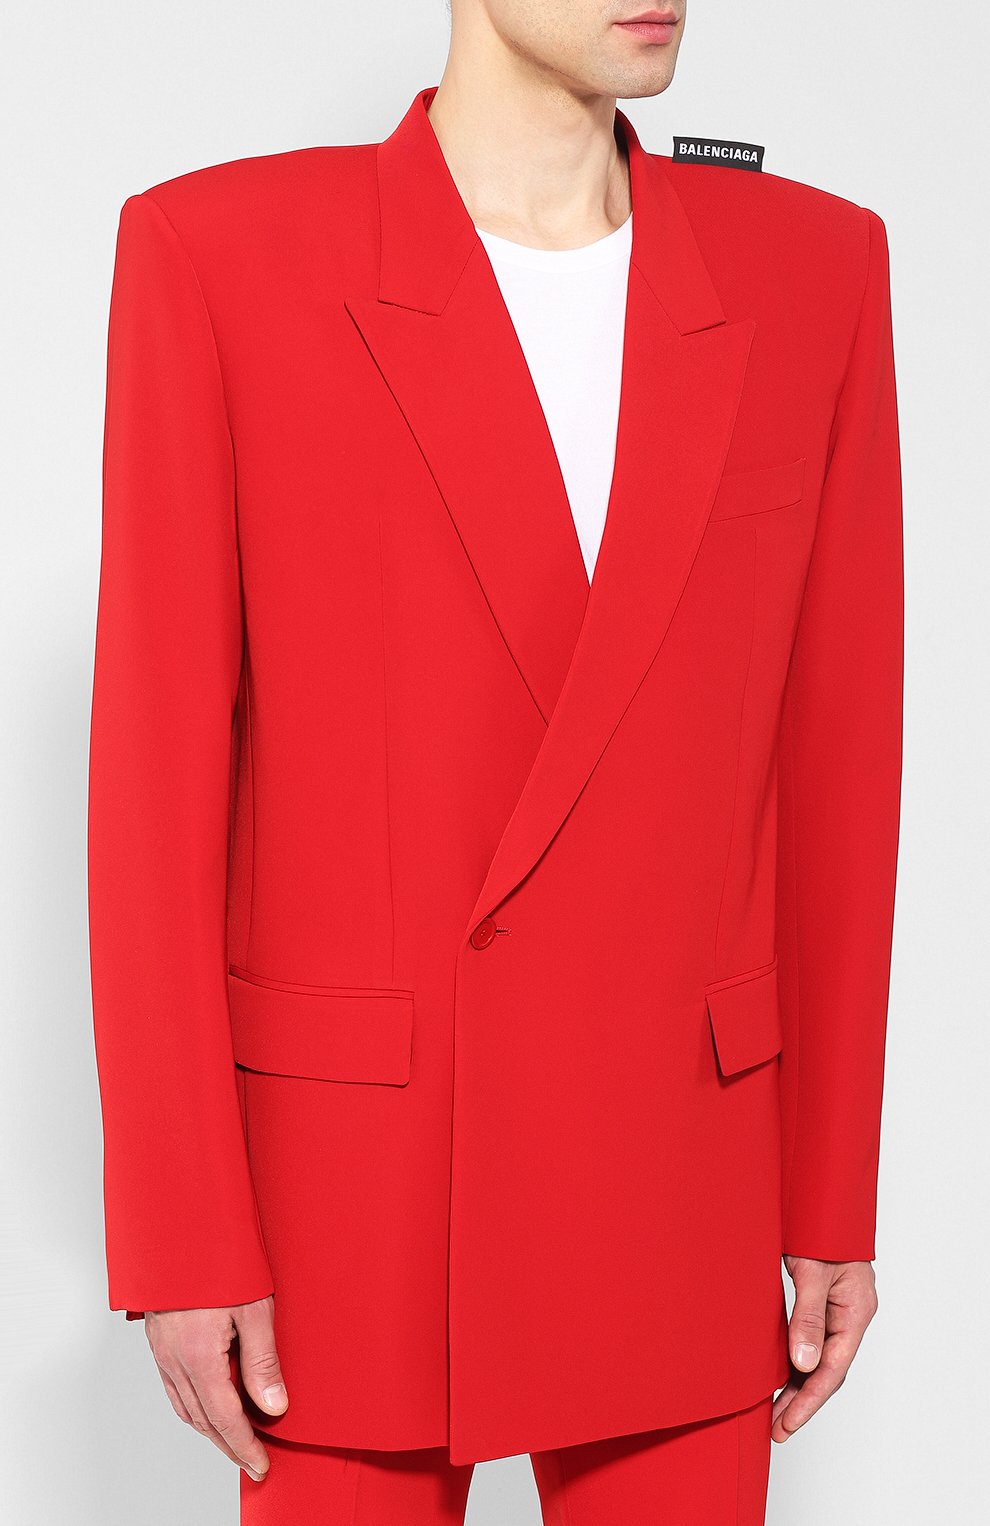 Красный пиджак мужской Баленсиага